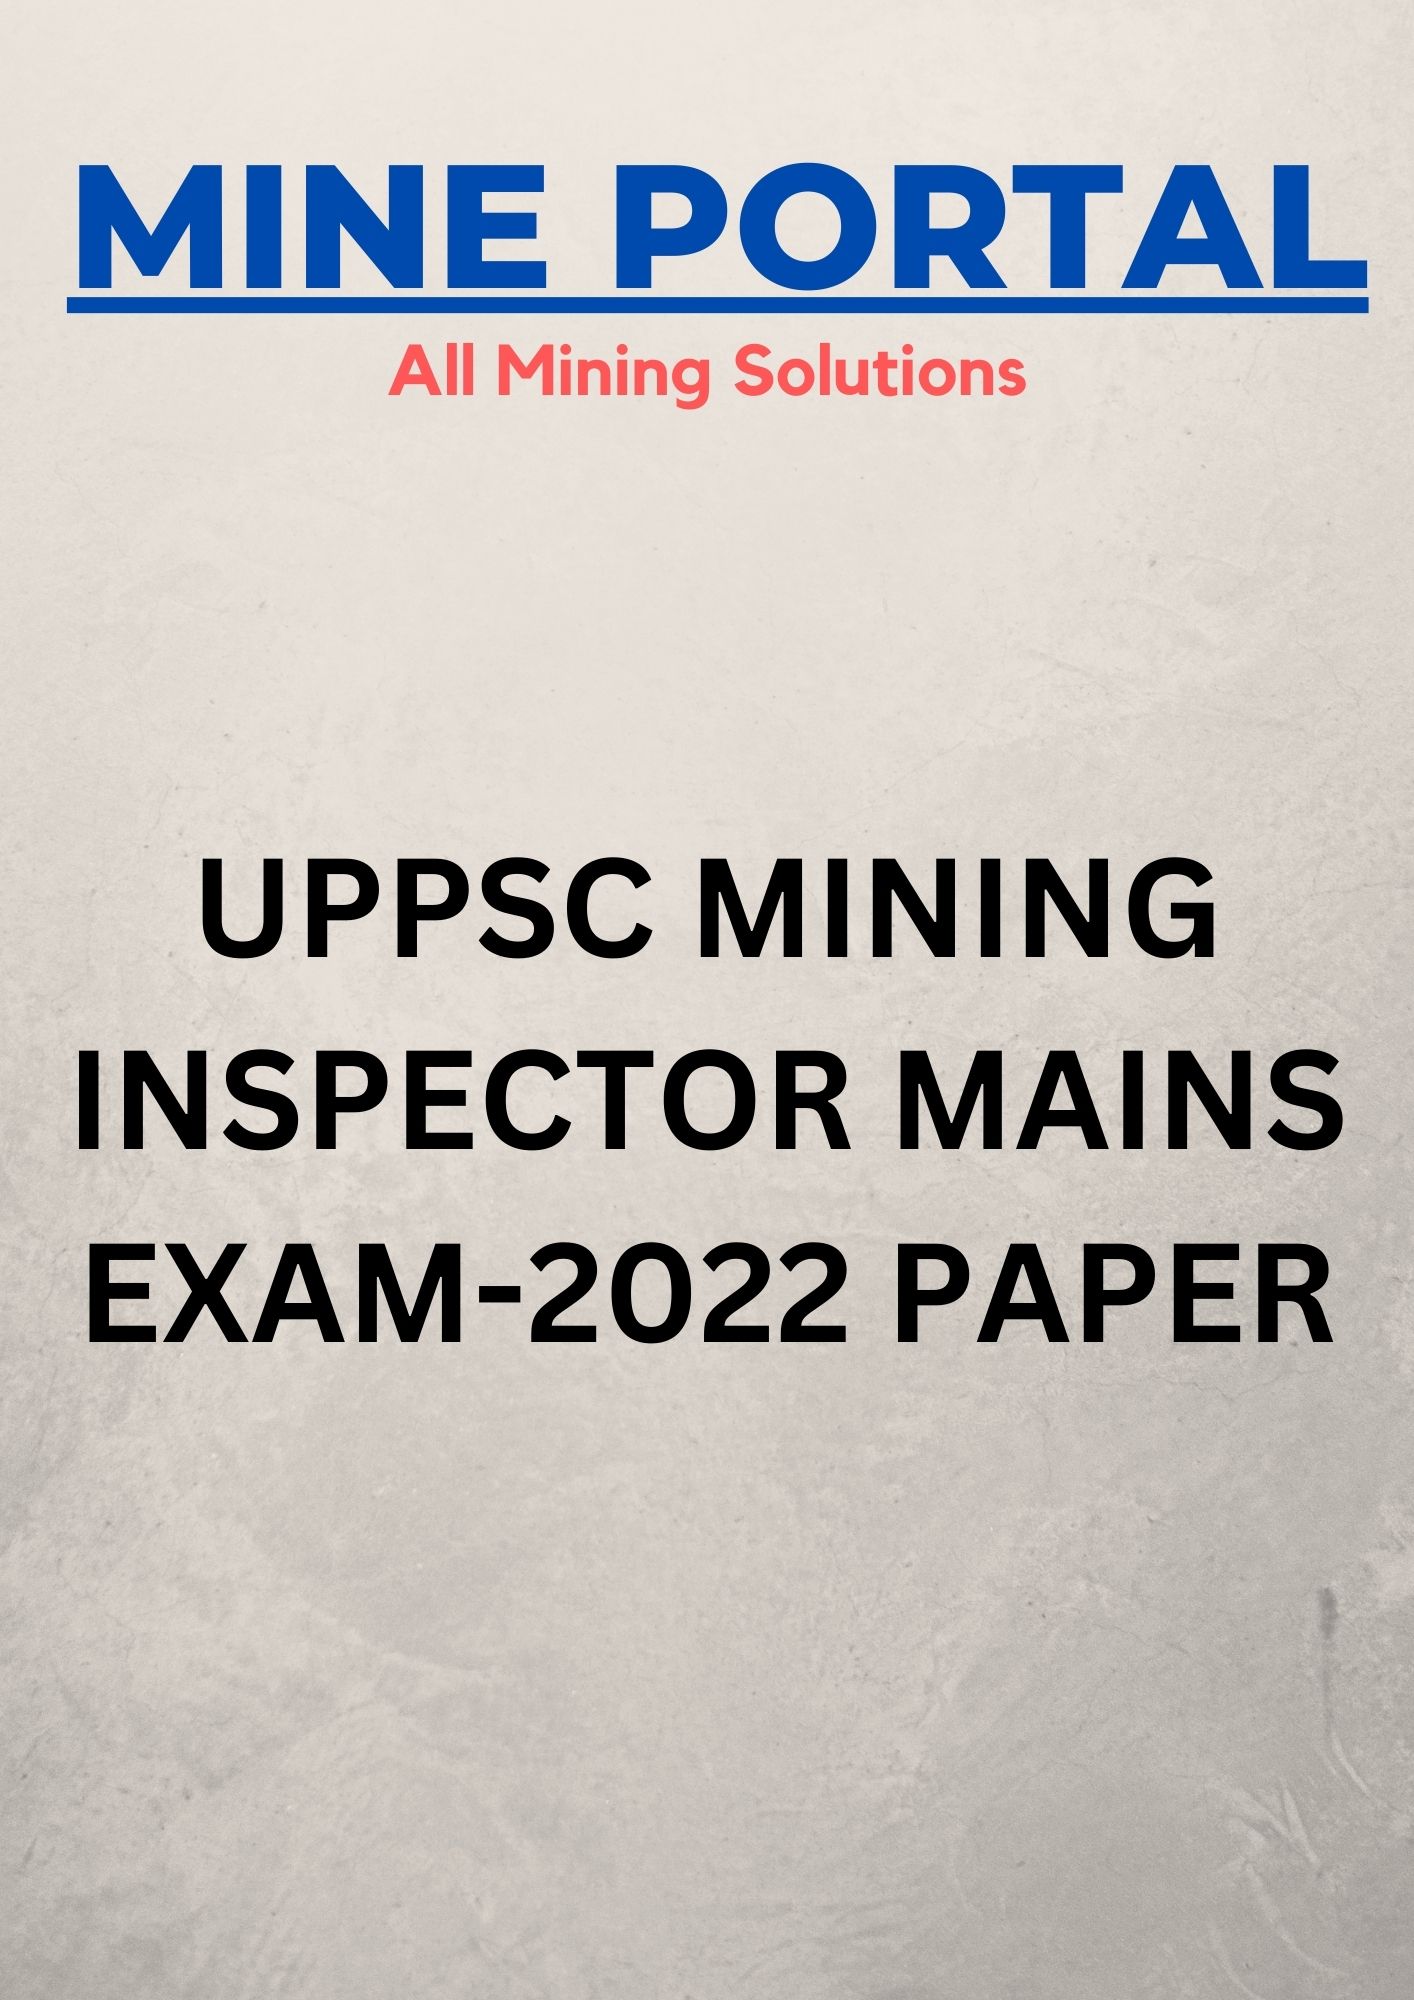 UPPSC MINING INSPECTOR MAINS EXAM 2022 PAPER